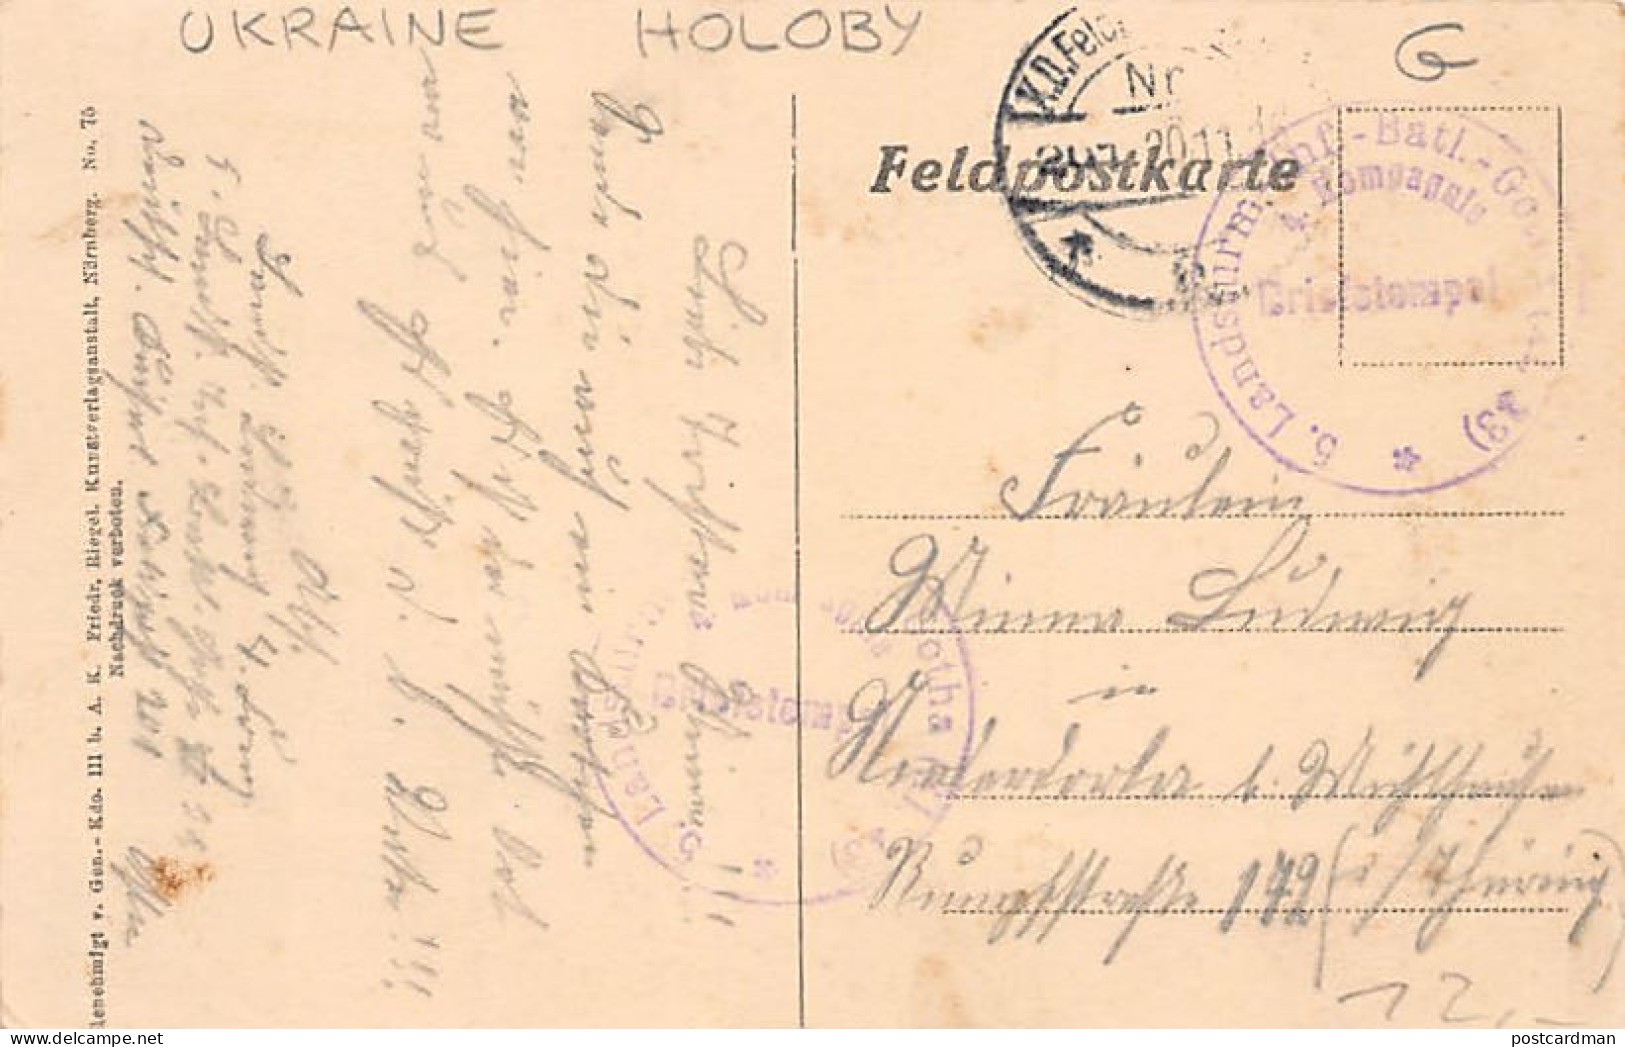 Ukraine - HOLOBY Goloby - World War One - Publ. Fr. Riegel  - Ukraine